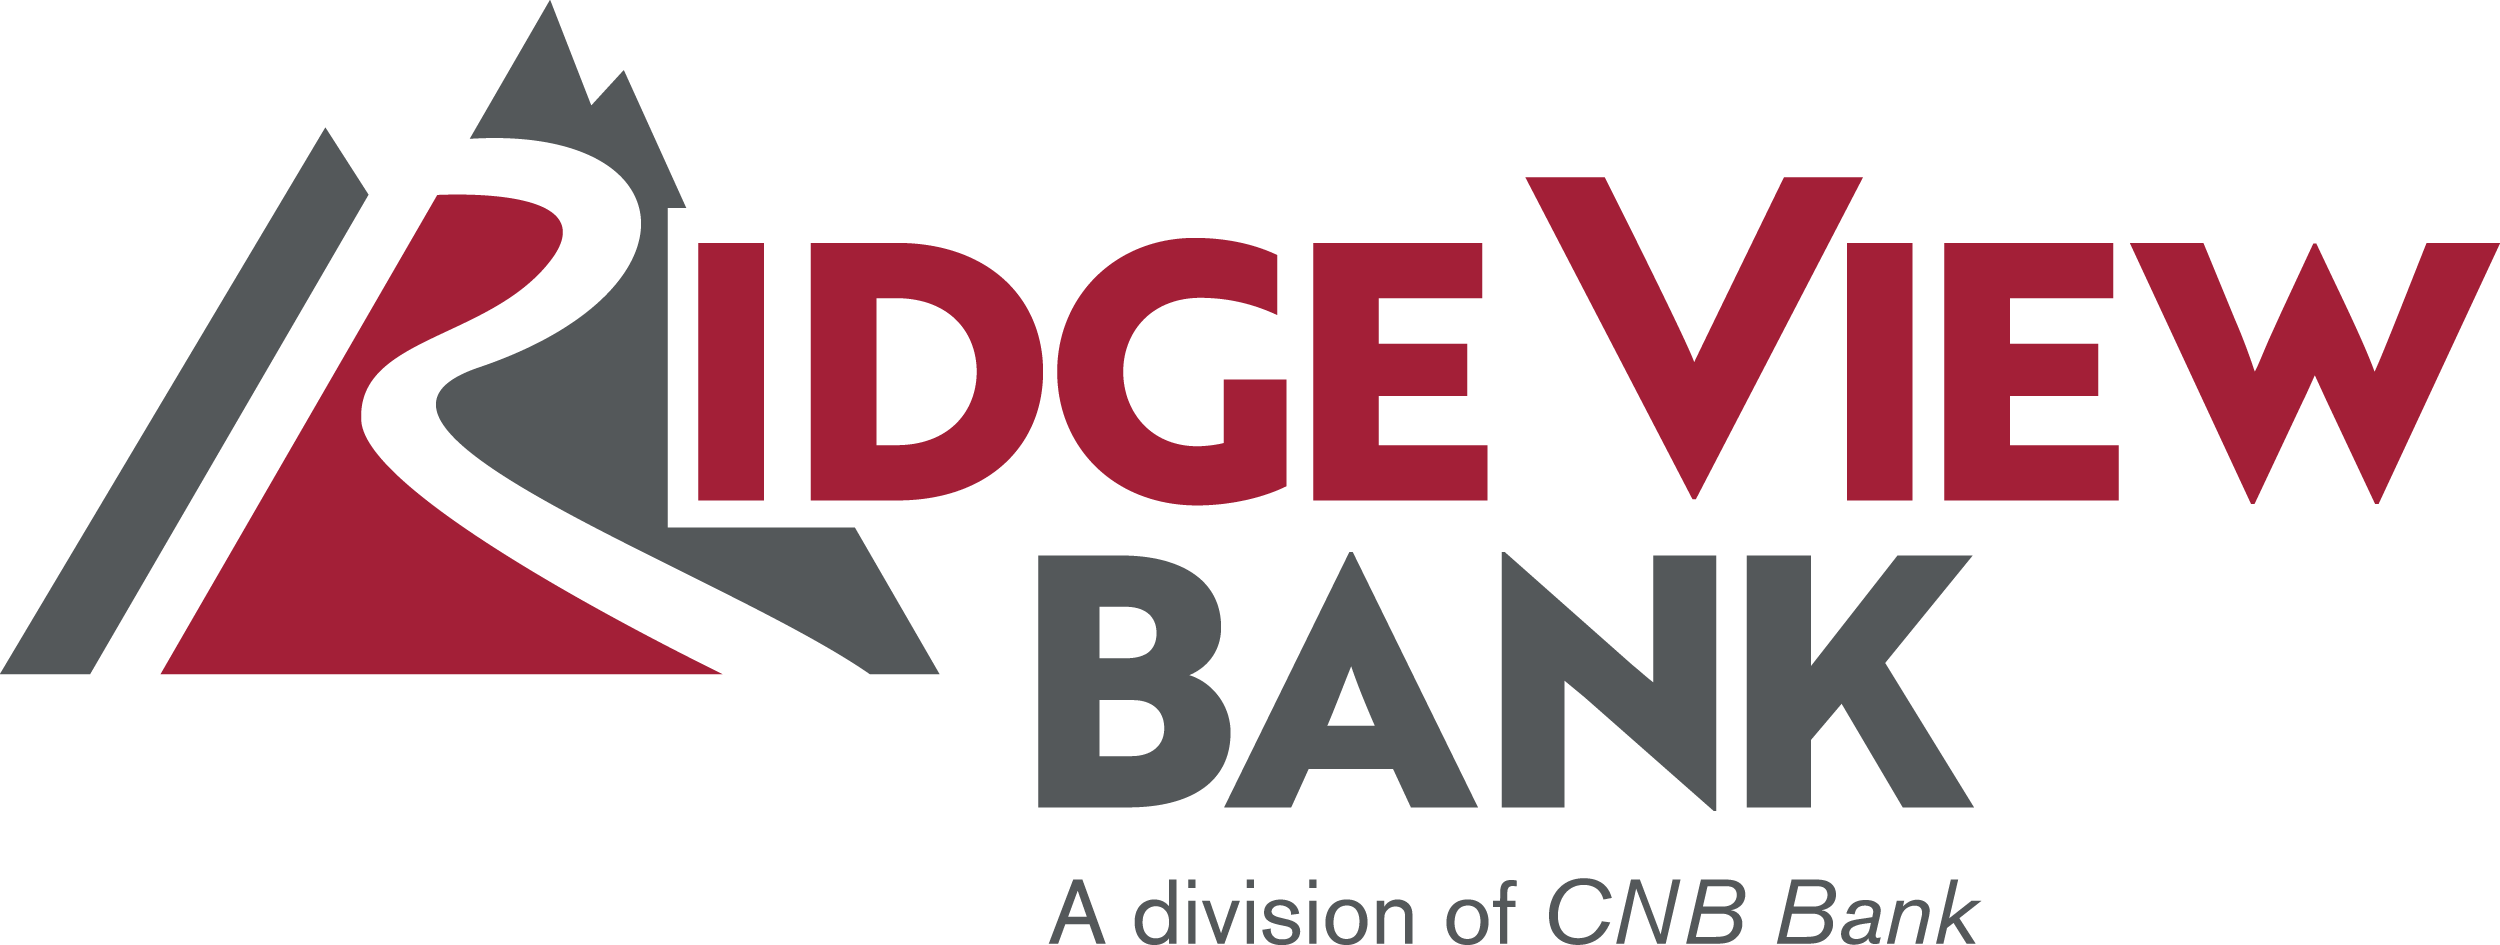 Ridge View Bank Logo